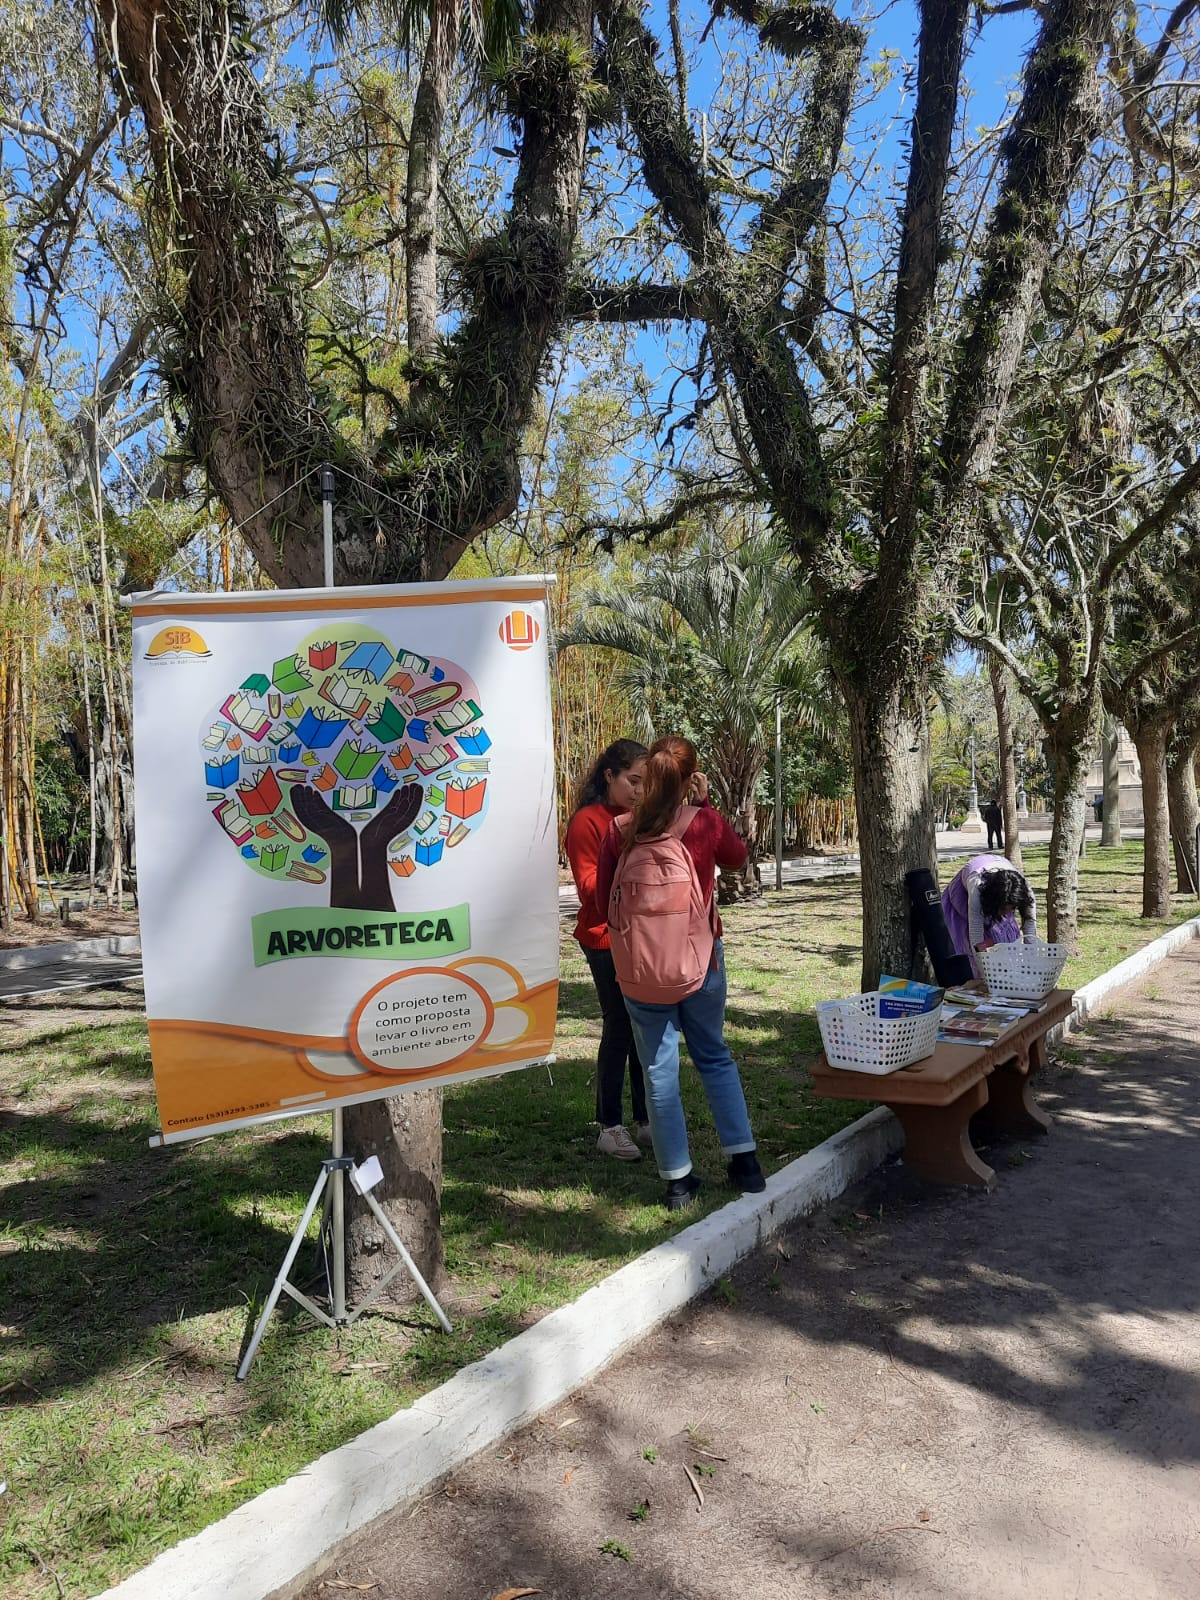 Fundo com árvores da praça Tamandaré, do lado esquerdo o banner do projeto arvoreteca e ao lado pessoas olhando alguns livros.